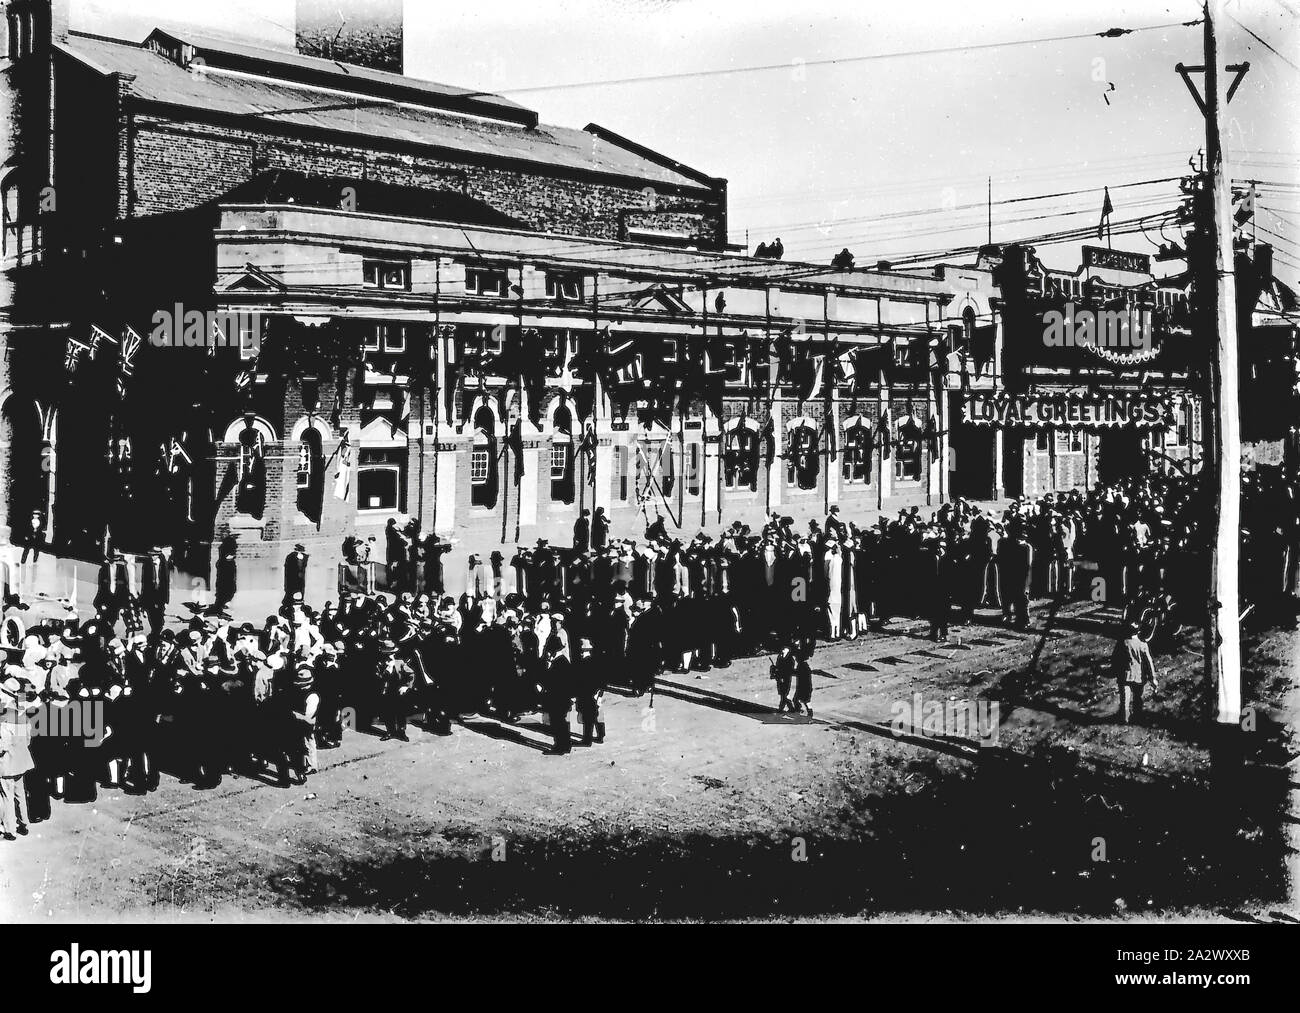 Negative - Geelong, Victoria, ca. 1928, eine Masse für einen königlichen Besuch gesammelt. Blakistan & Unternehmen ist im Hintergrund der Masse eine Parade route gefüttert haben. Fahnen und Banner schmücken die Route Stockfoto